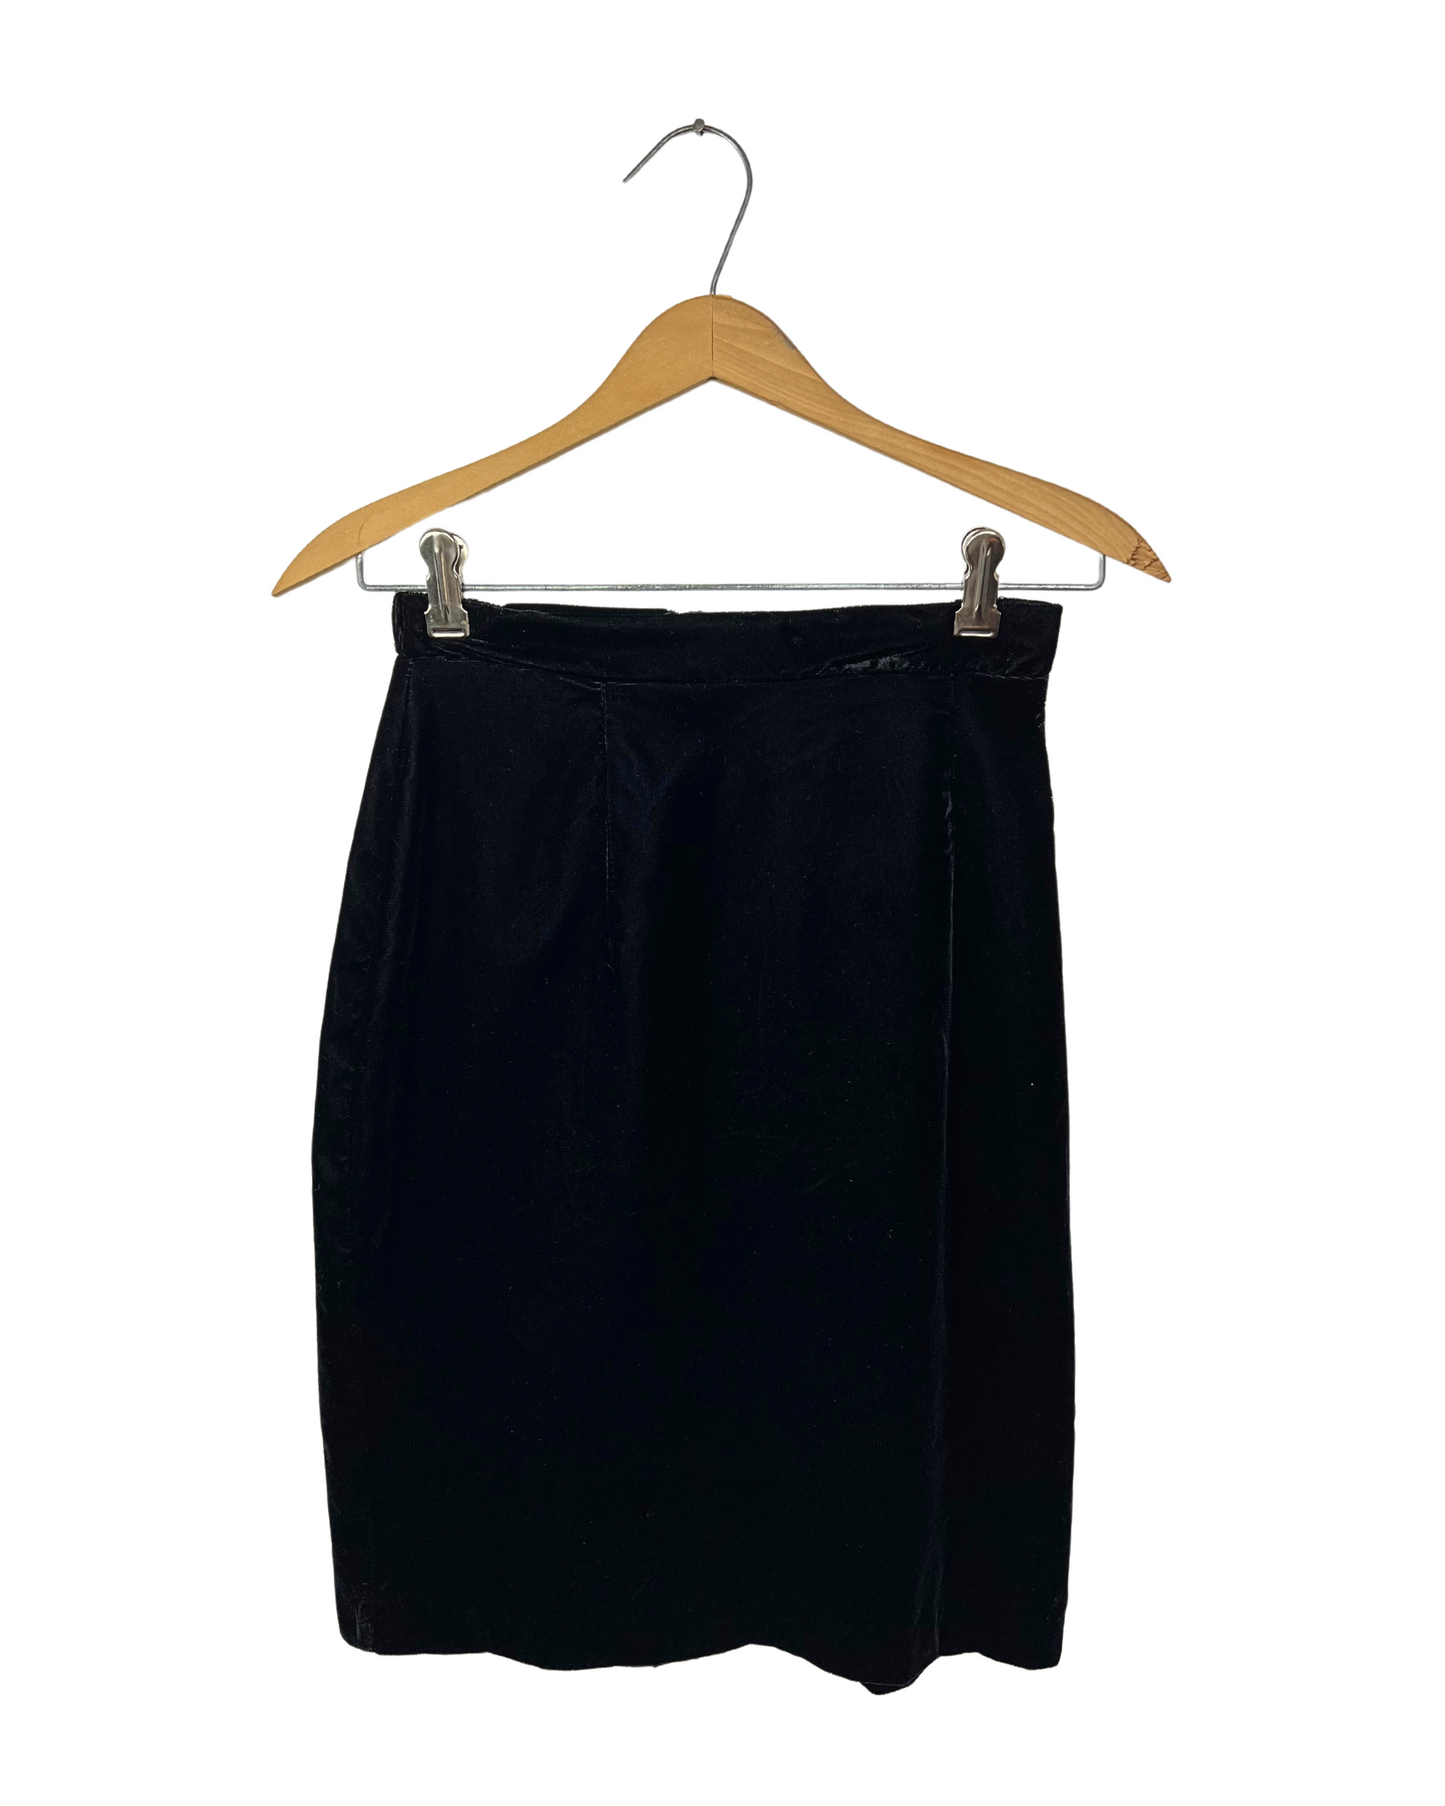 90's Black Crushed Velvet Pencil Skirt Size S